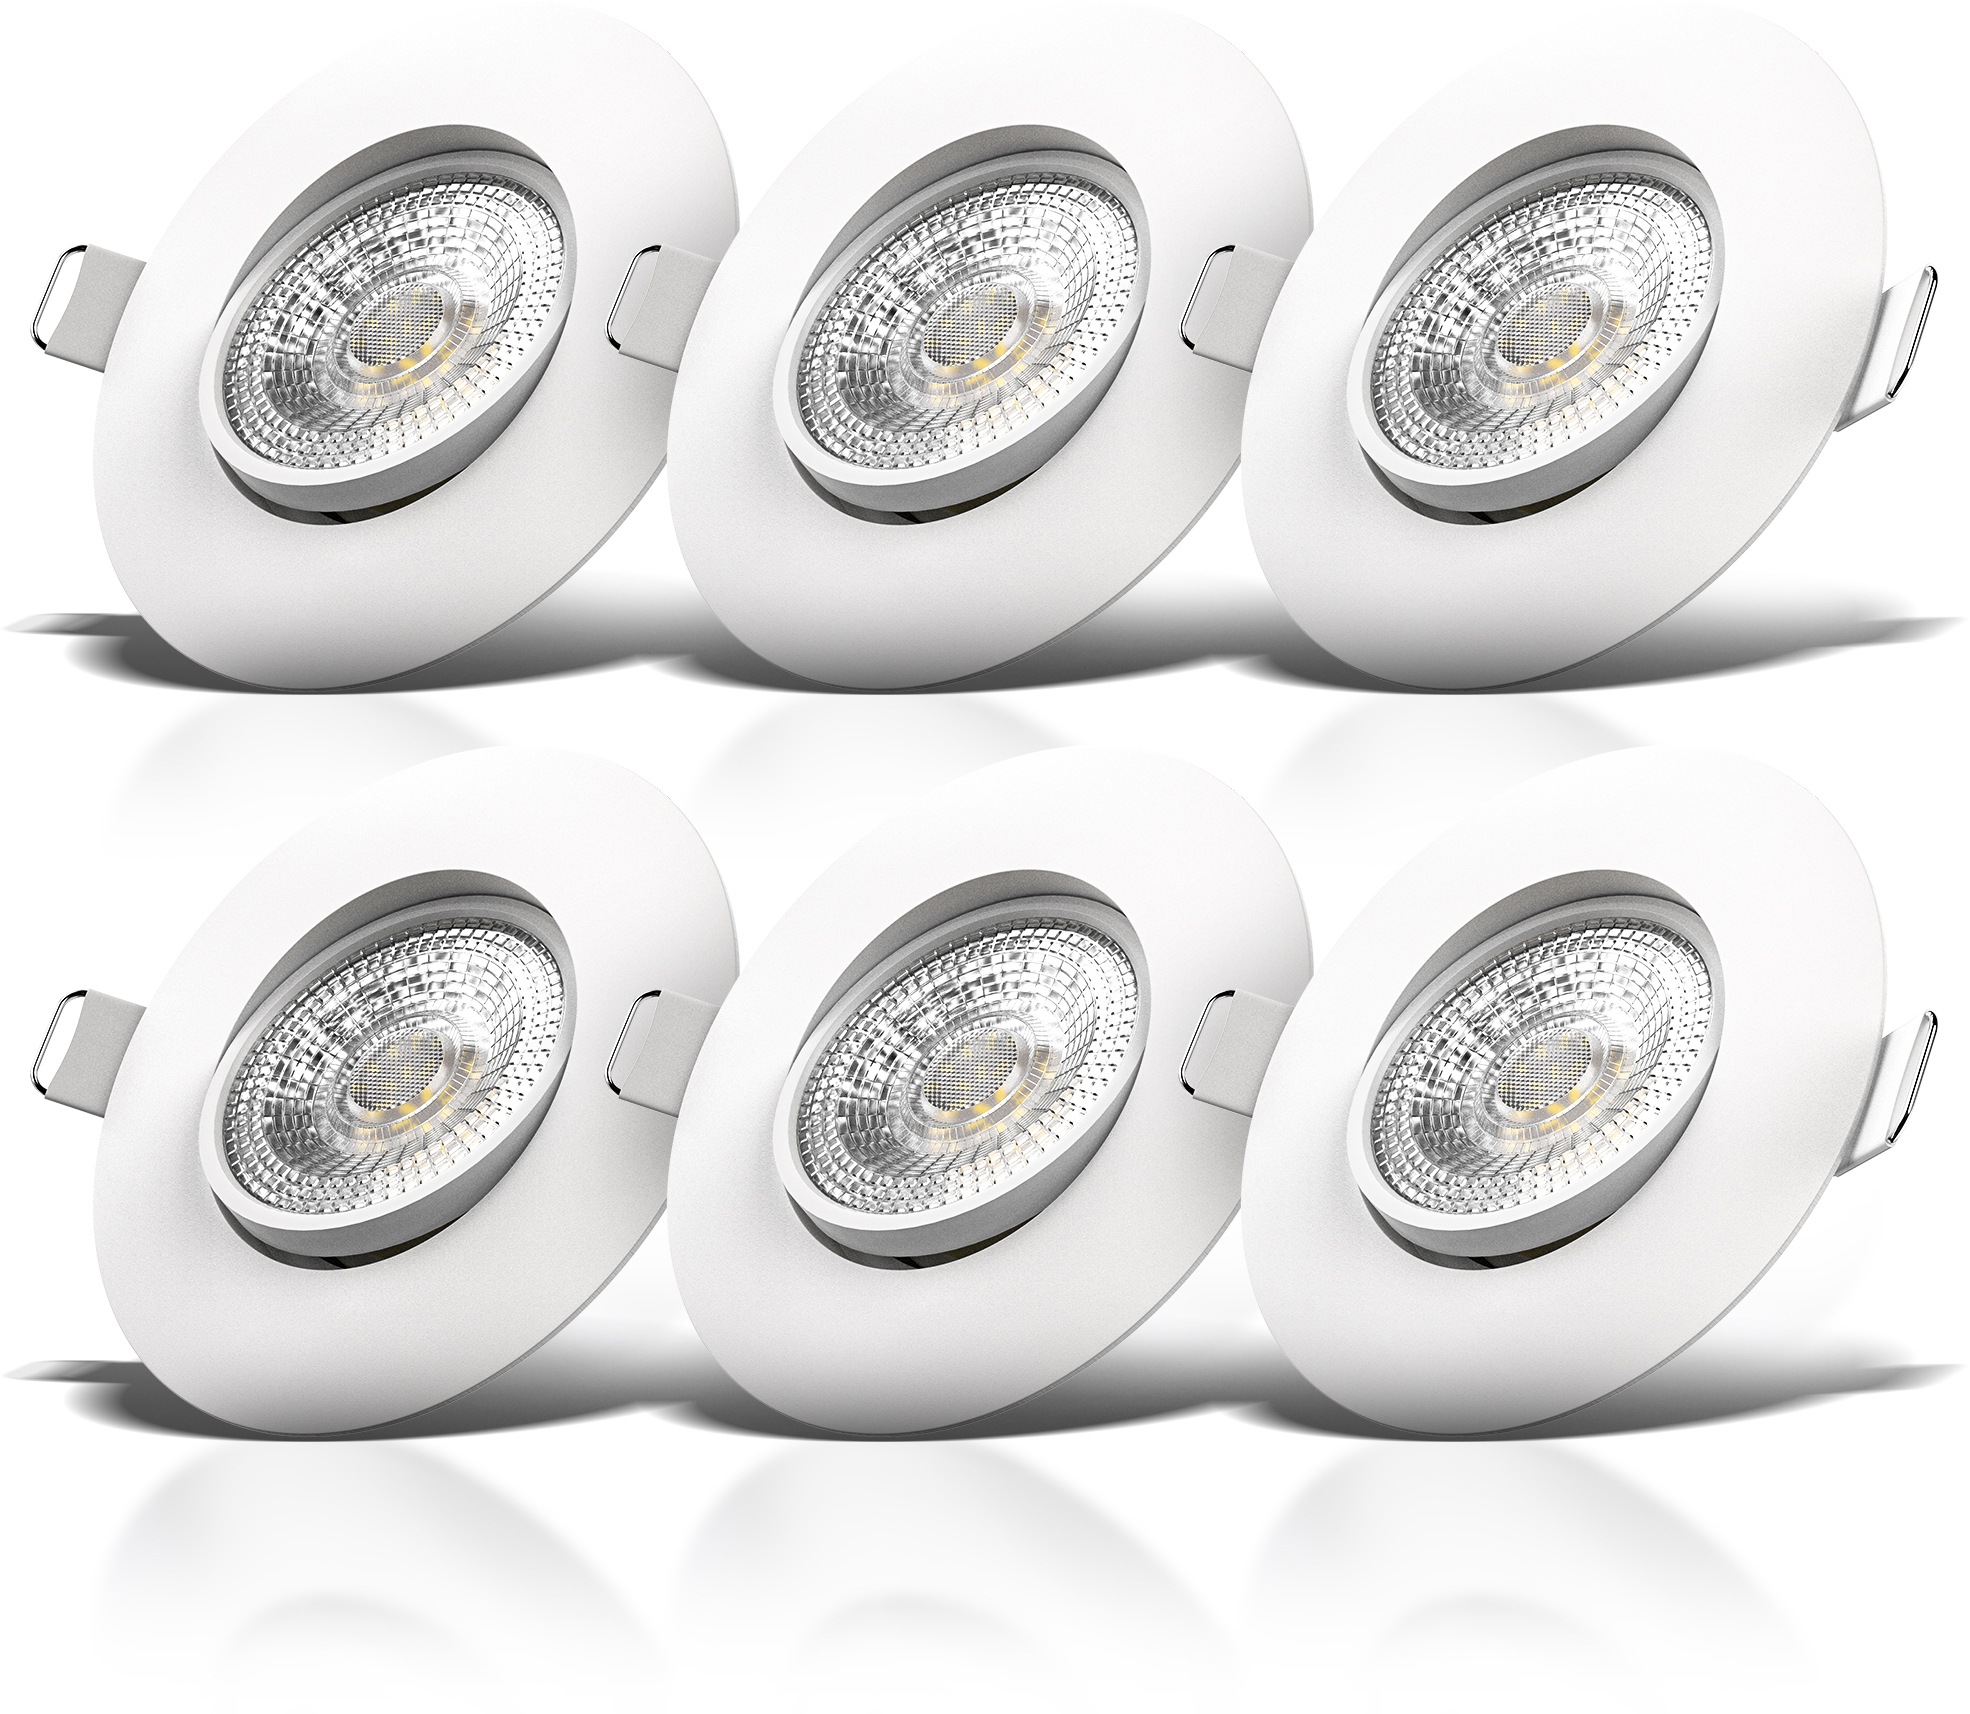 B.K.Licht LED Einbauleuchte, Einbauspots, schwenkbar, IP23, ultra-flach,  Deckenspots, warmweiß, 6er Set | BAUR